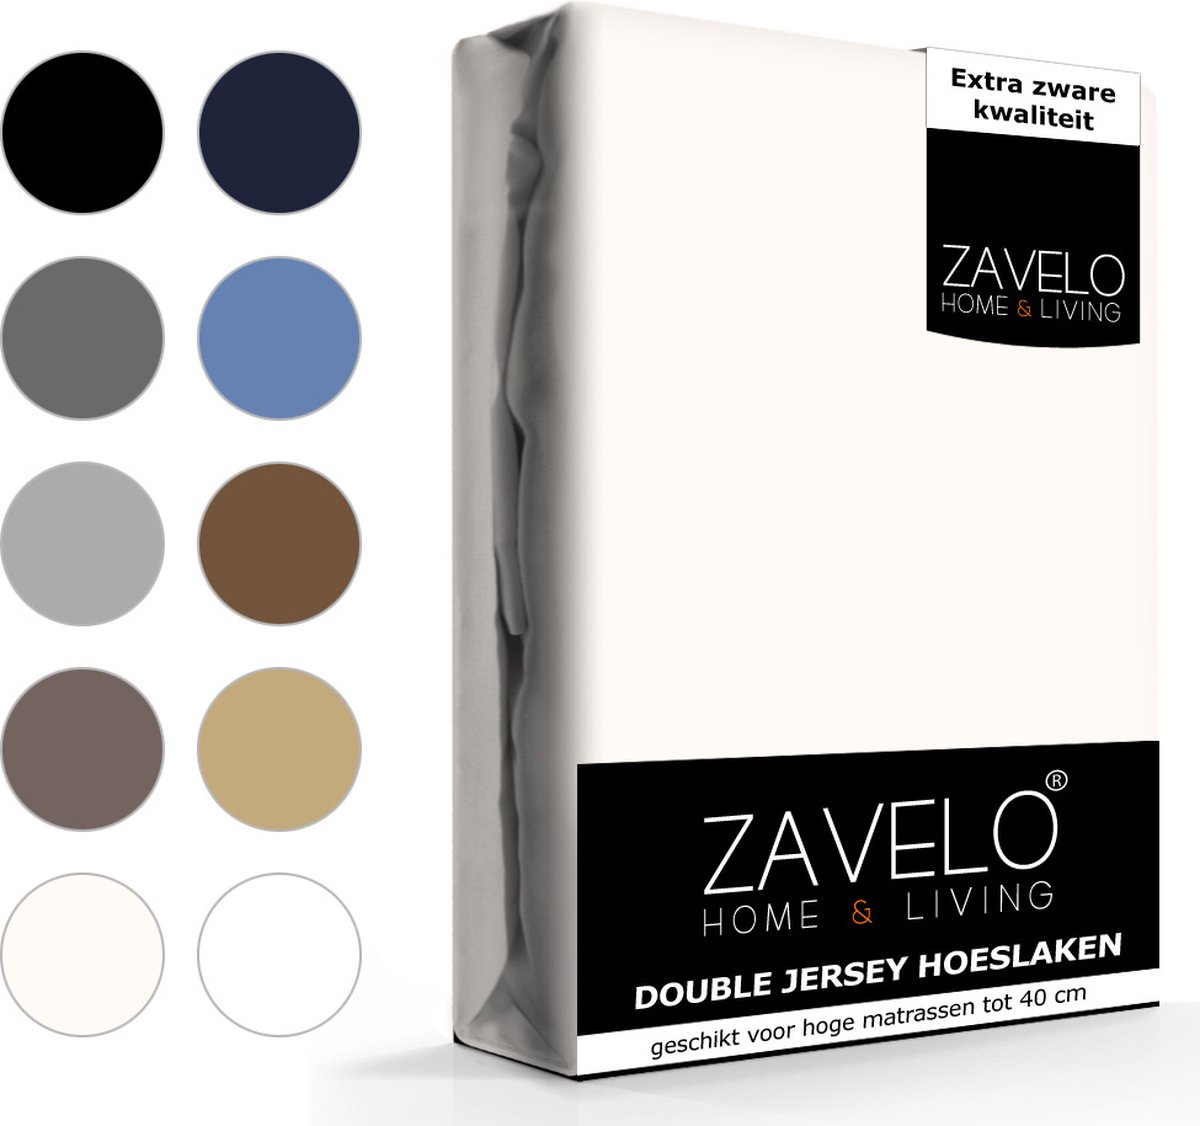 Slaaptextiel Zavelo Double Jersey Hoeslaken Creme-lits-jumeaux (200x220 Cm) - Beige